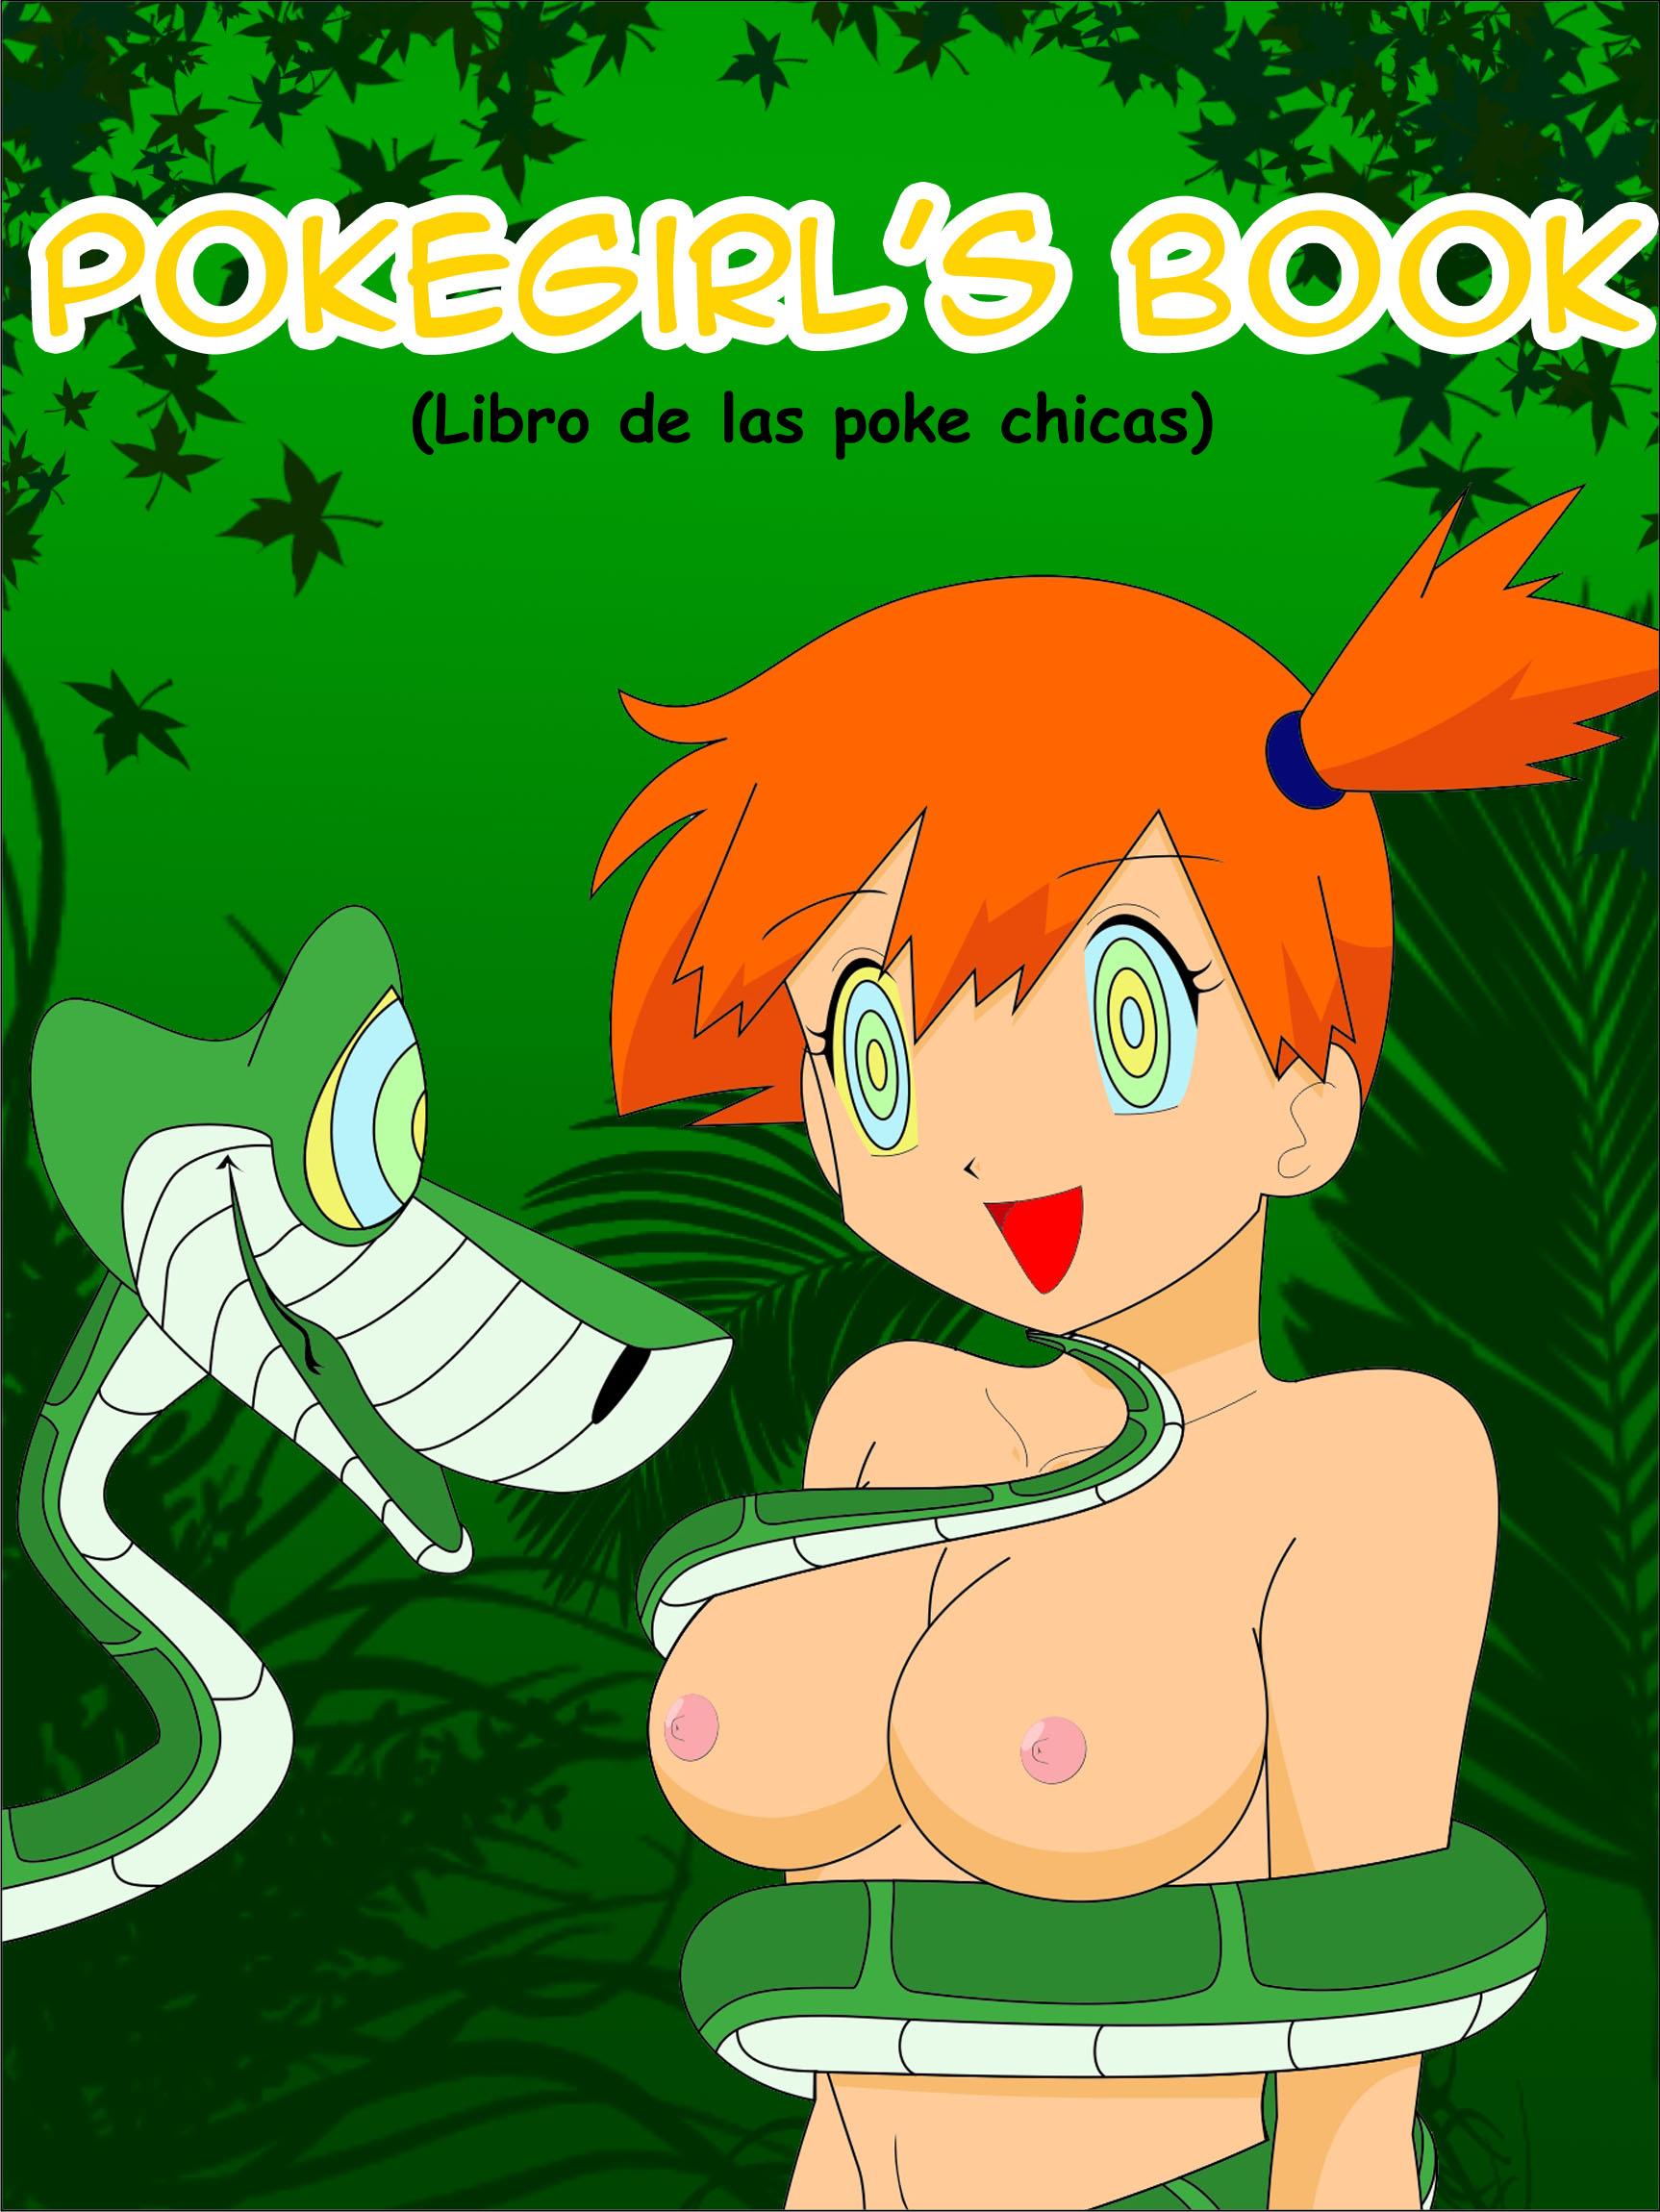 Pokegirls Book Pokemon The Jungle Book French0